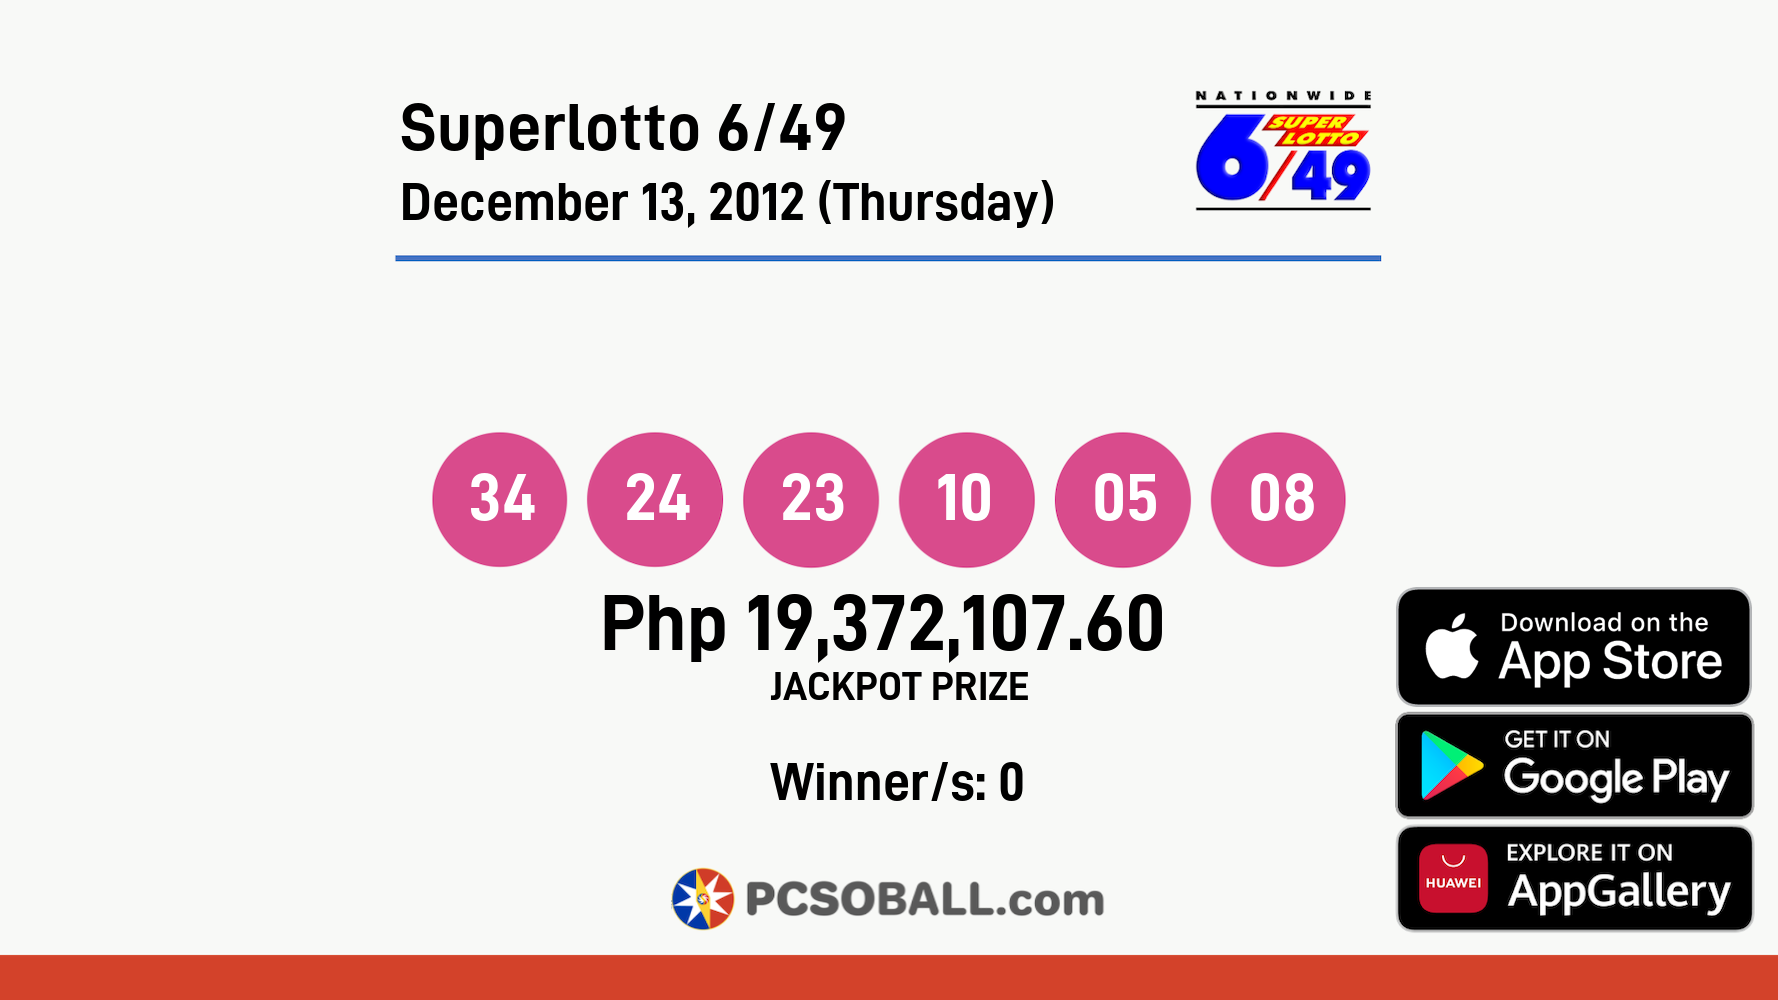 Superlotto 6/49 December 13, 2012 (Thursday) Result